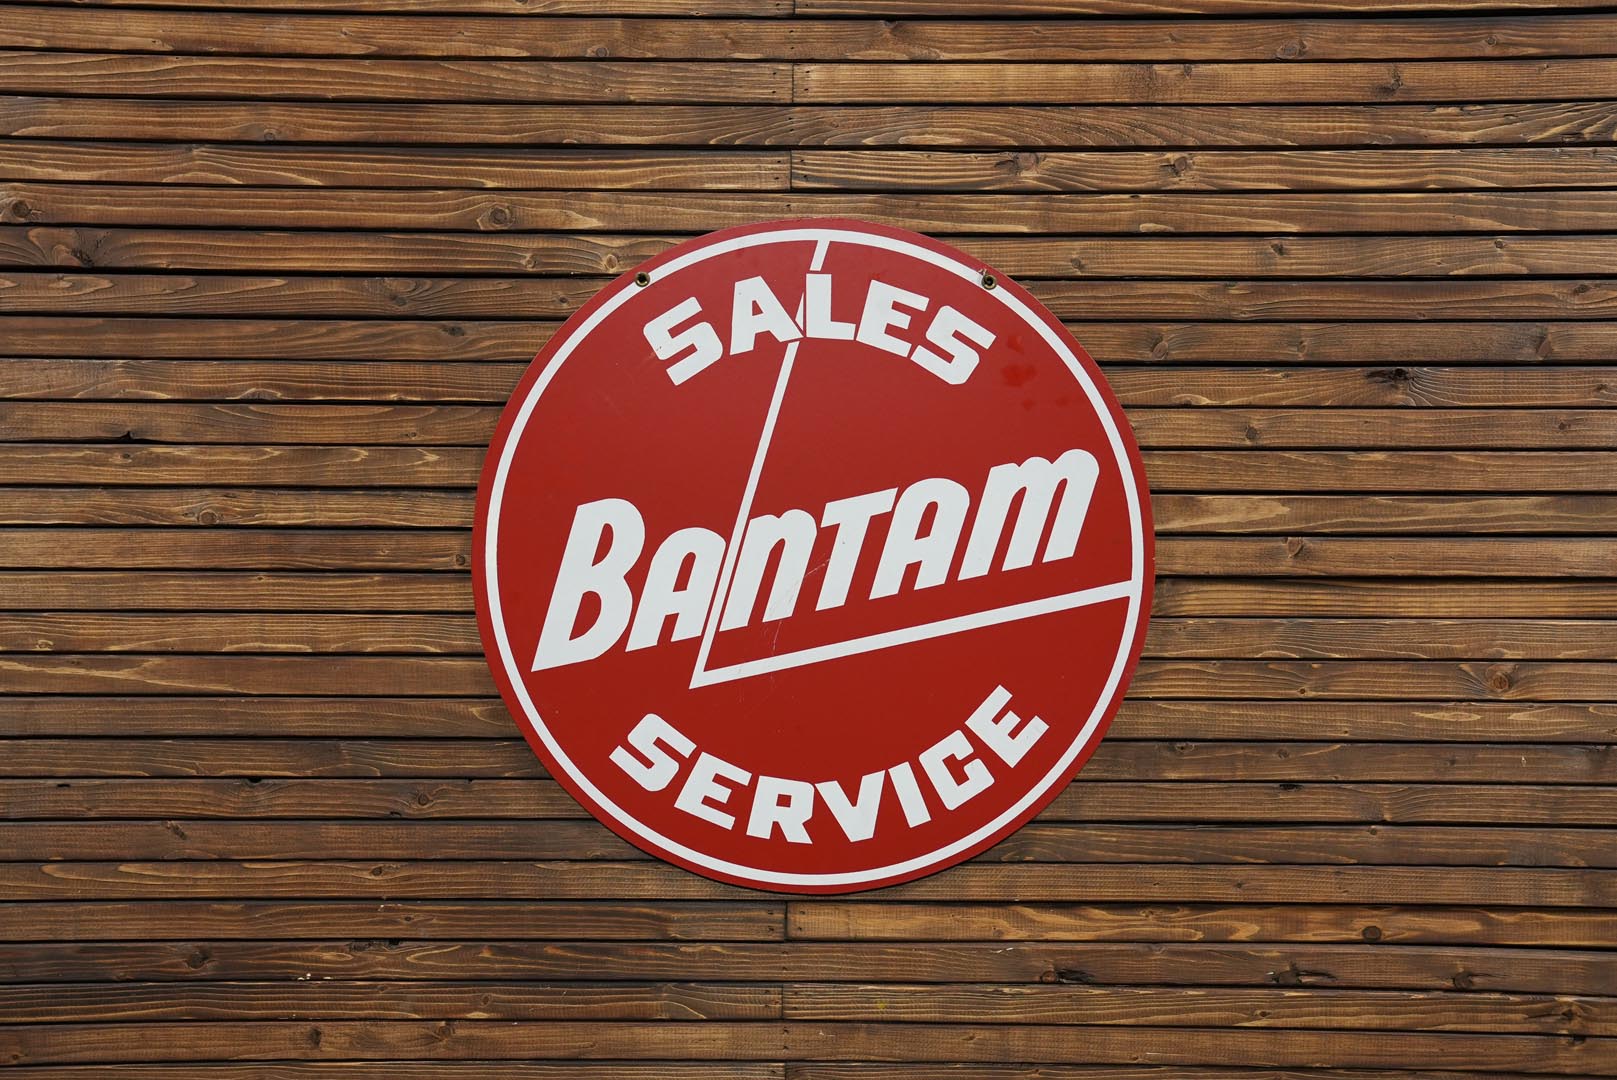  Bantam Sales & Service DS Plas tic Sign - Reproduction 